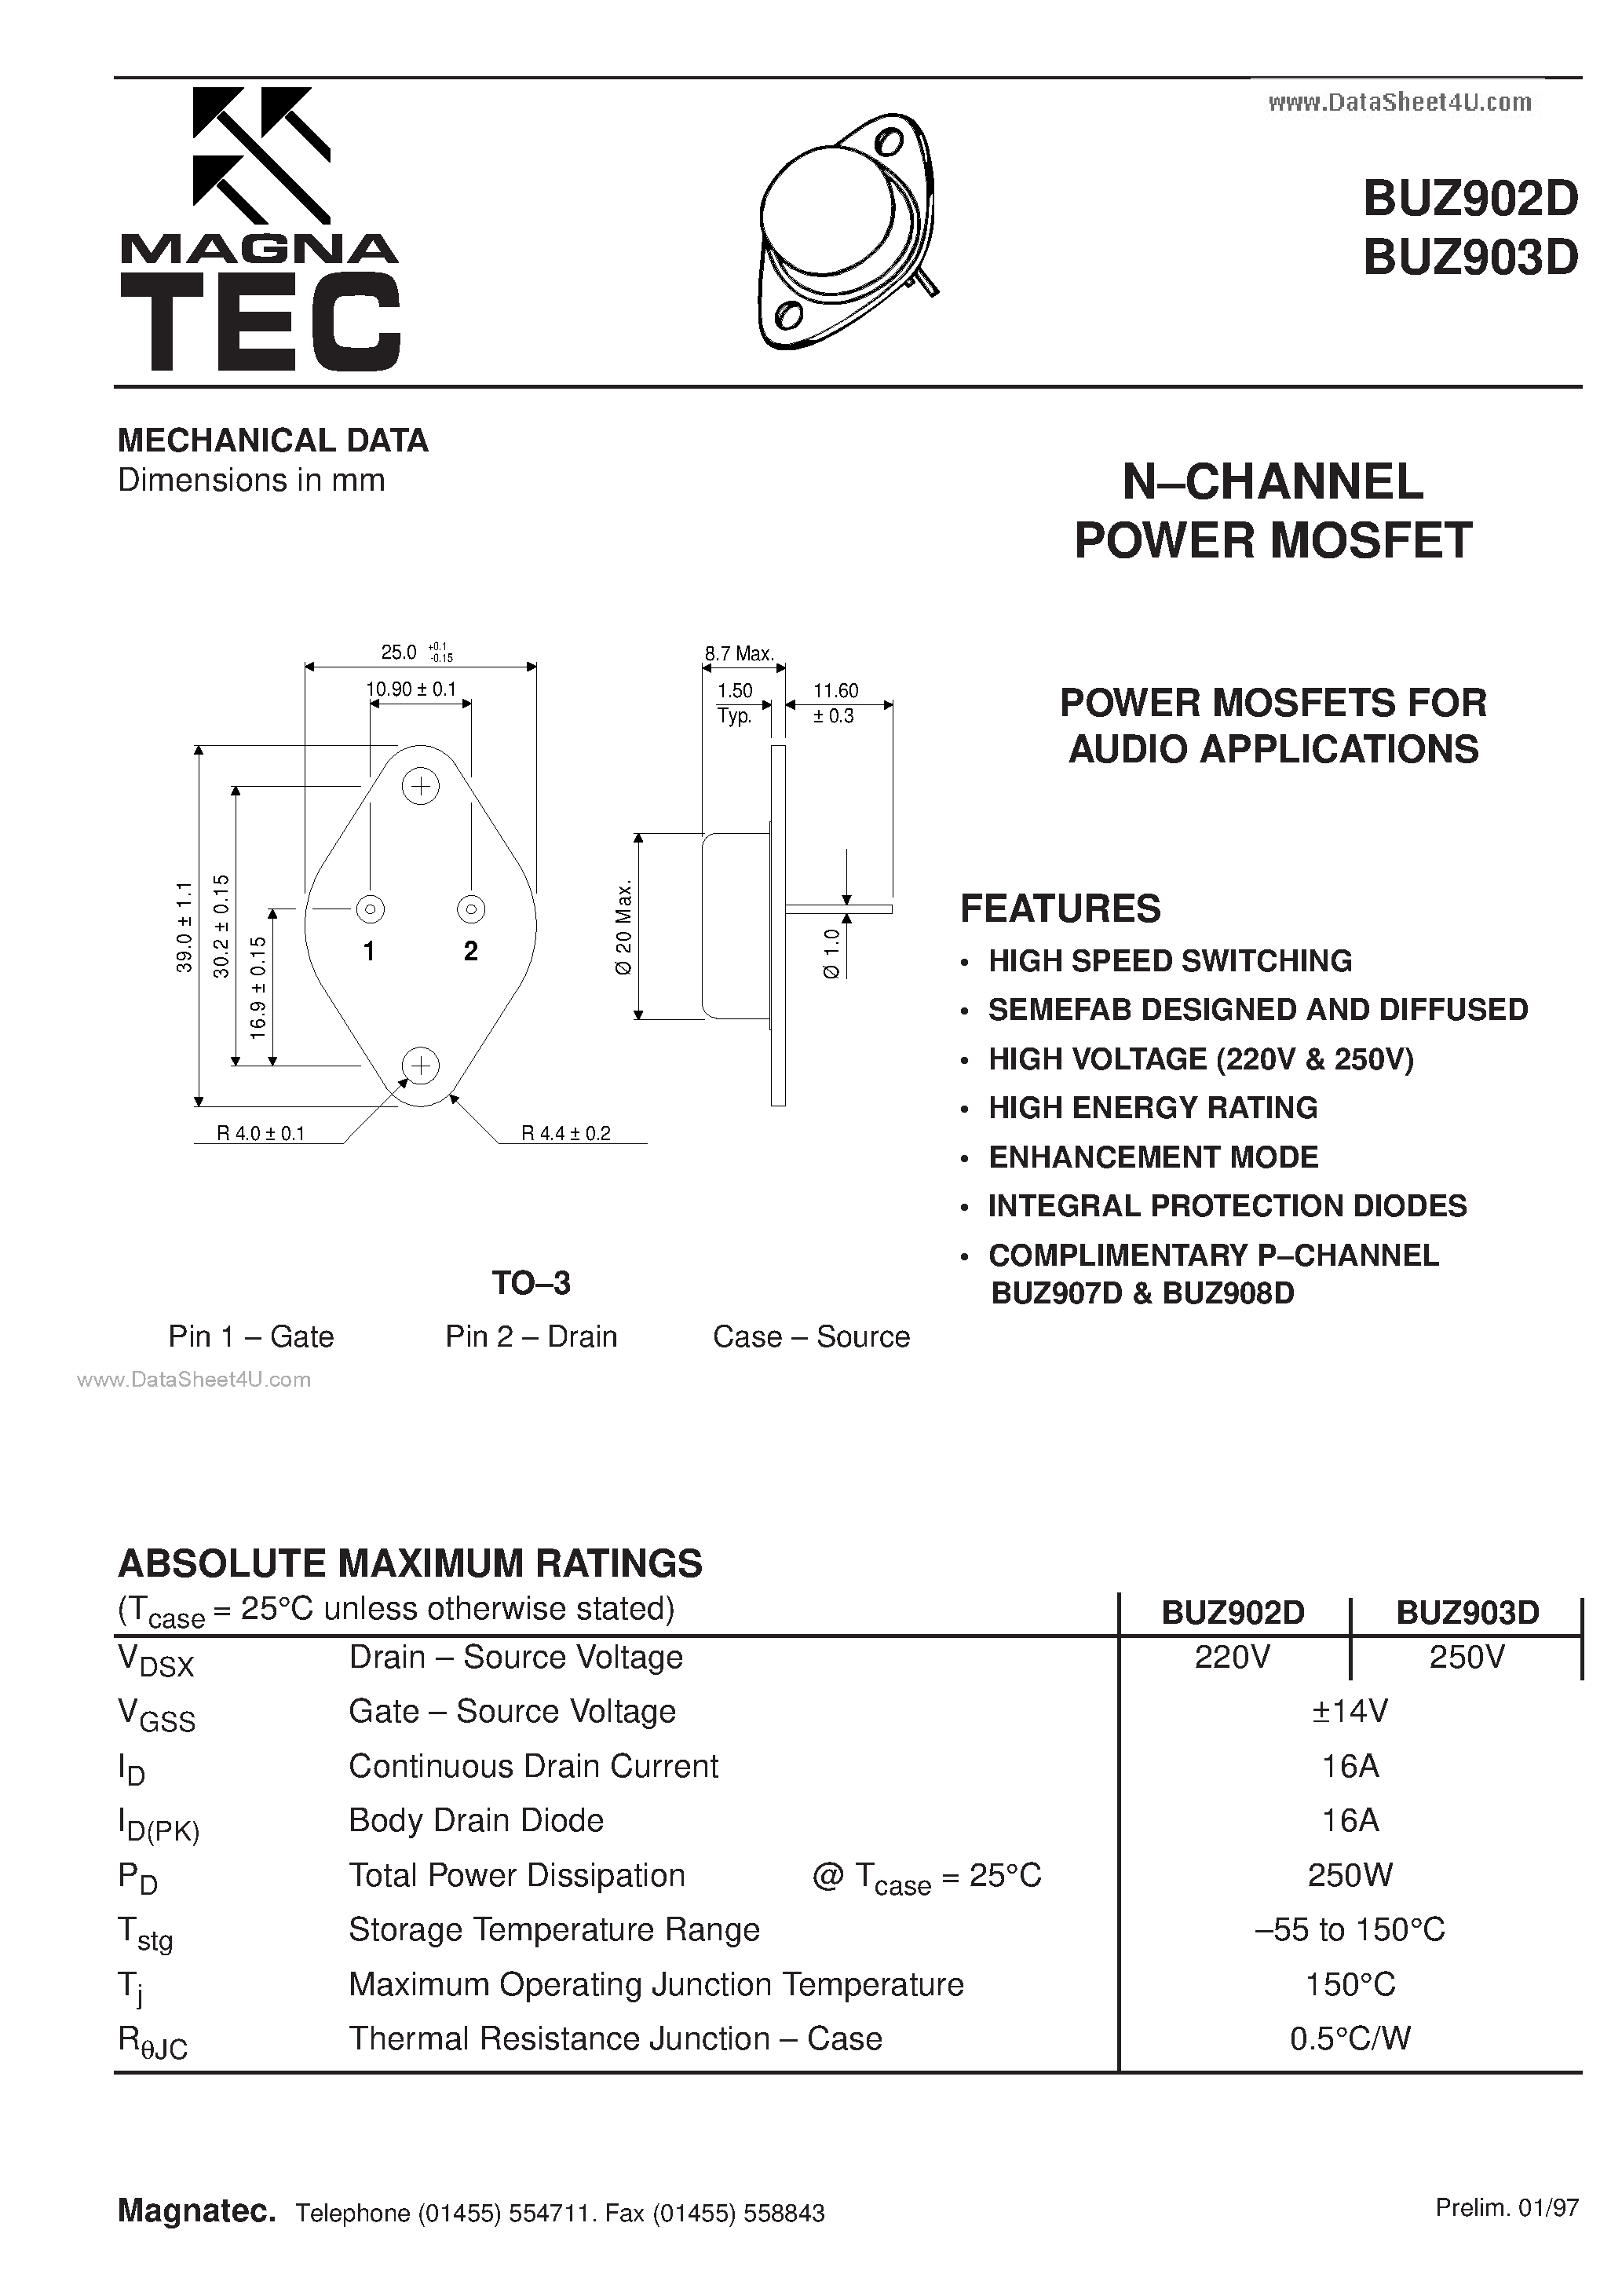 Даташит BUZ902D - (BUZ902D / BUZ903D) N CHANNEL POWER MOSFET страница 1